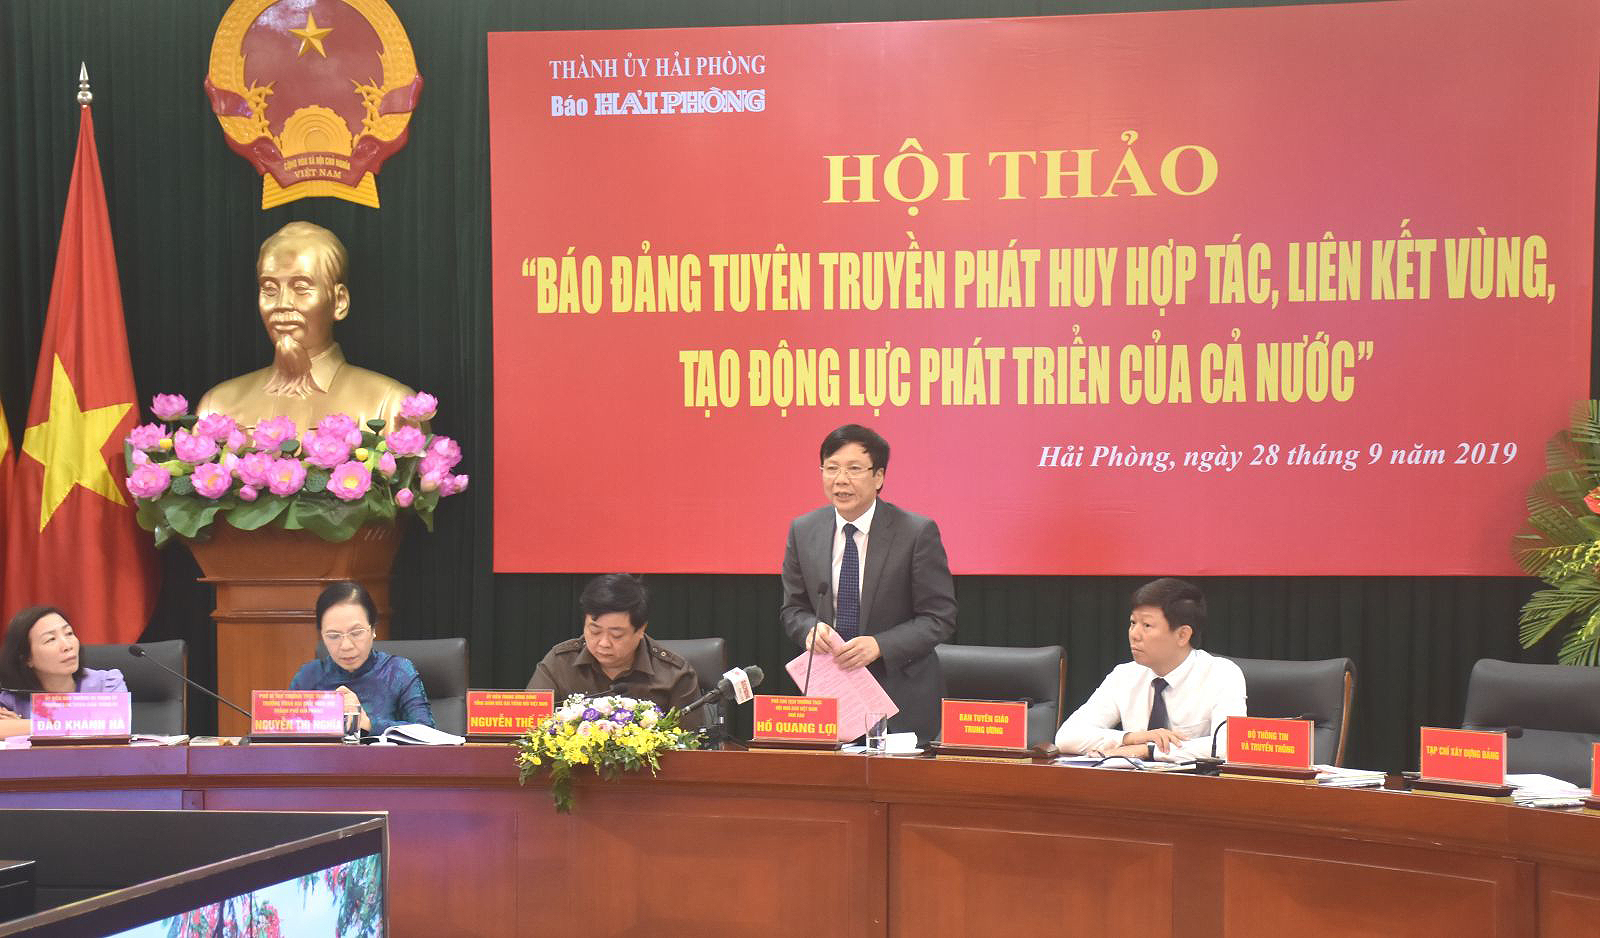 Ông Hồ Quang Lợi, Phó Chủ tịch Thường trực Hội Nhà báo Việt Nam phát biểu tại Hội thảo. Ảnh: Kim Xuân.